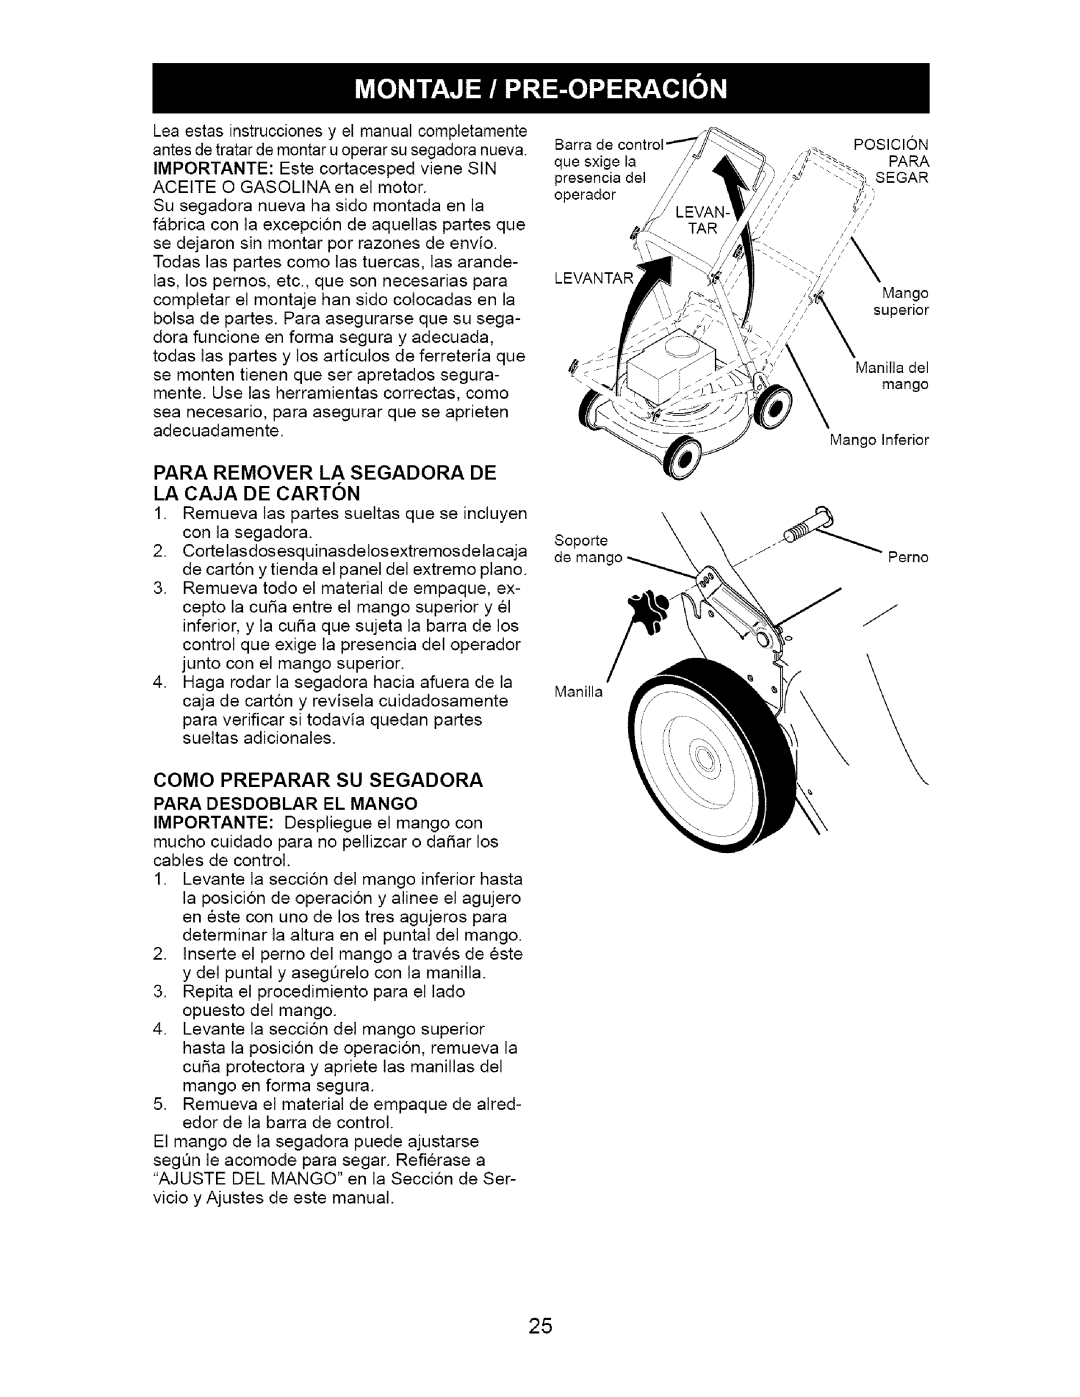 Craftsman 917.37074 manual Para Remover La Segadora De La Caja De Carton, Como Preparar Su Segadora Para Desdoblar El Mango 